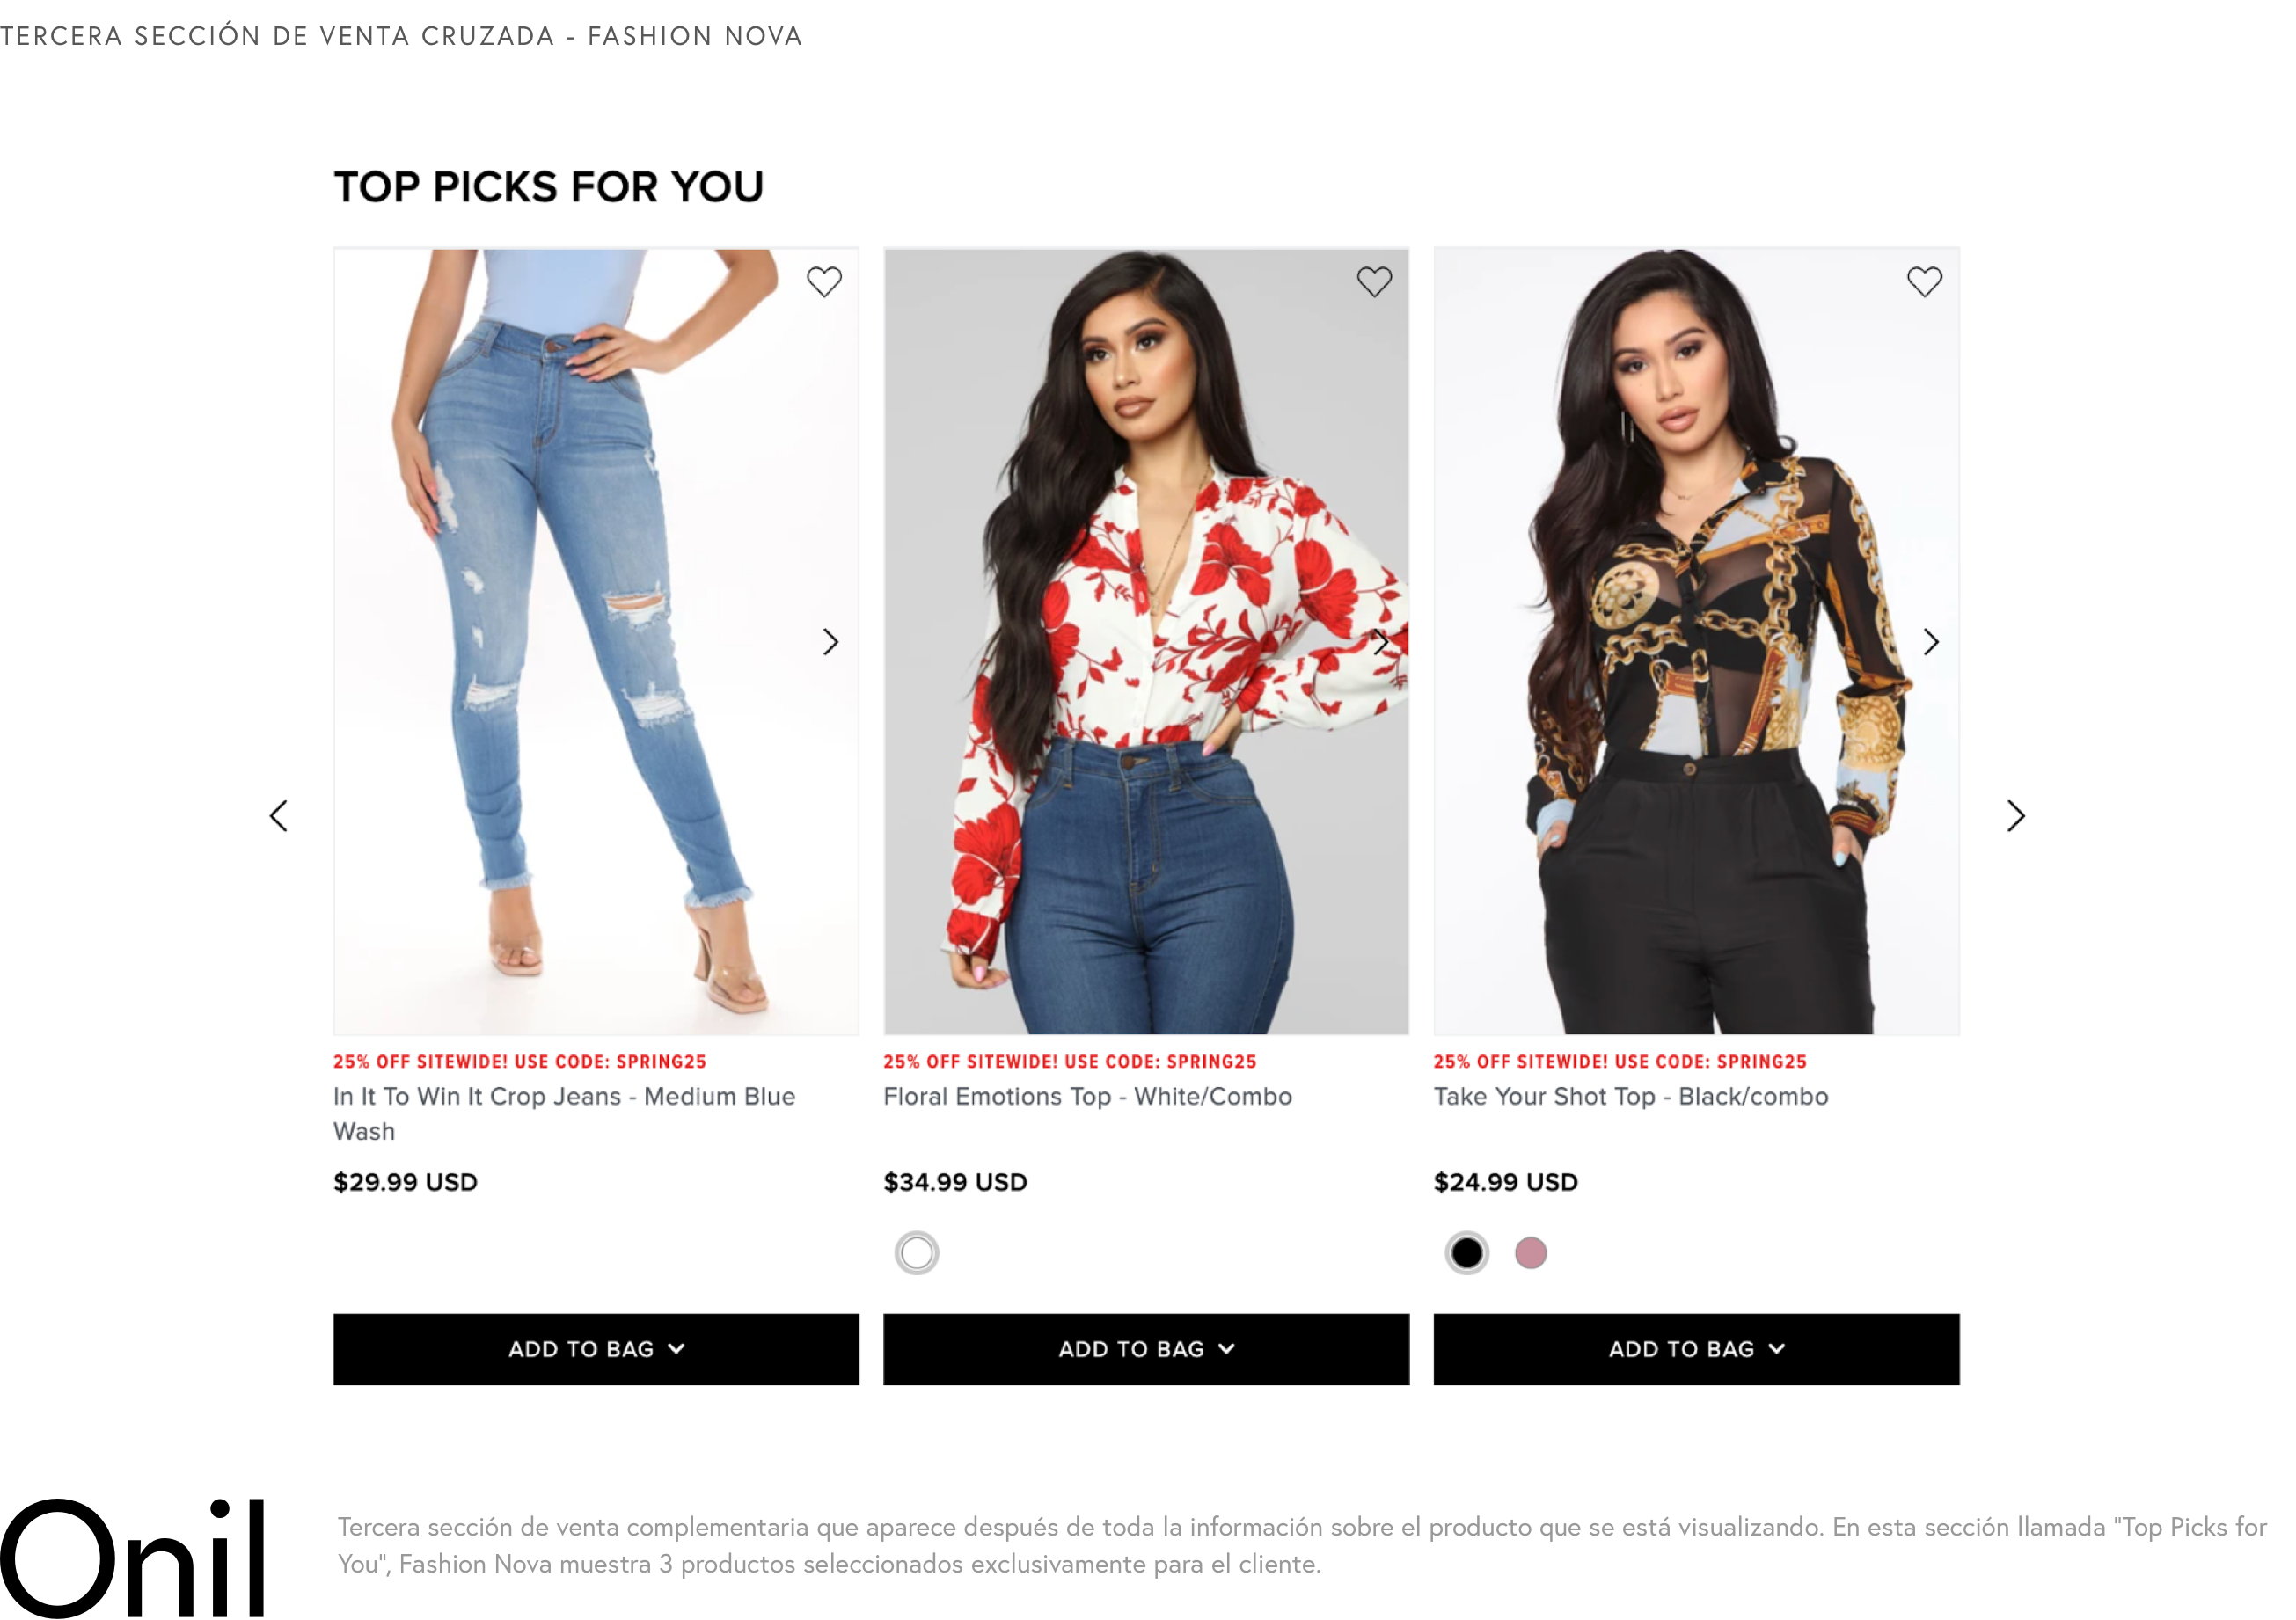 Tercera sección de venta cruzada - En esta sección llamada “Top Picks for You”, Fashion Nova muestra 3 productos seleccionados exclusivamente para el cliente.